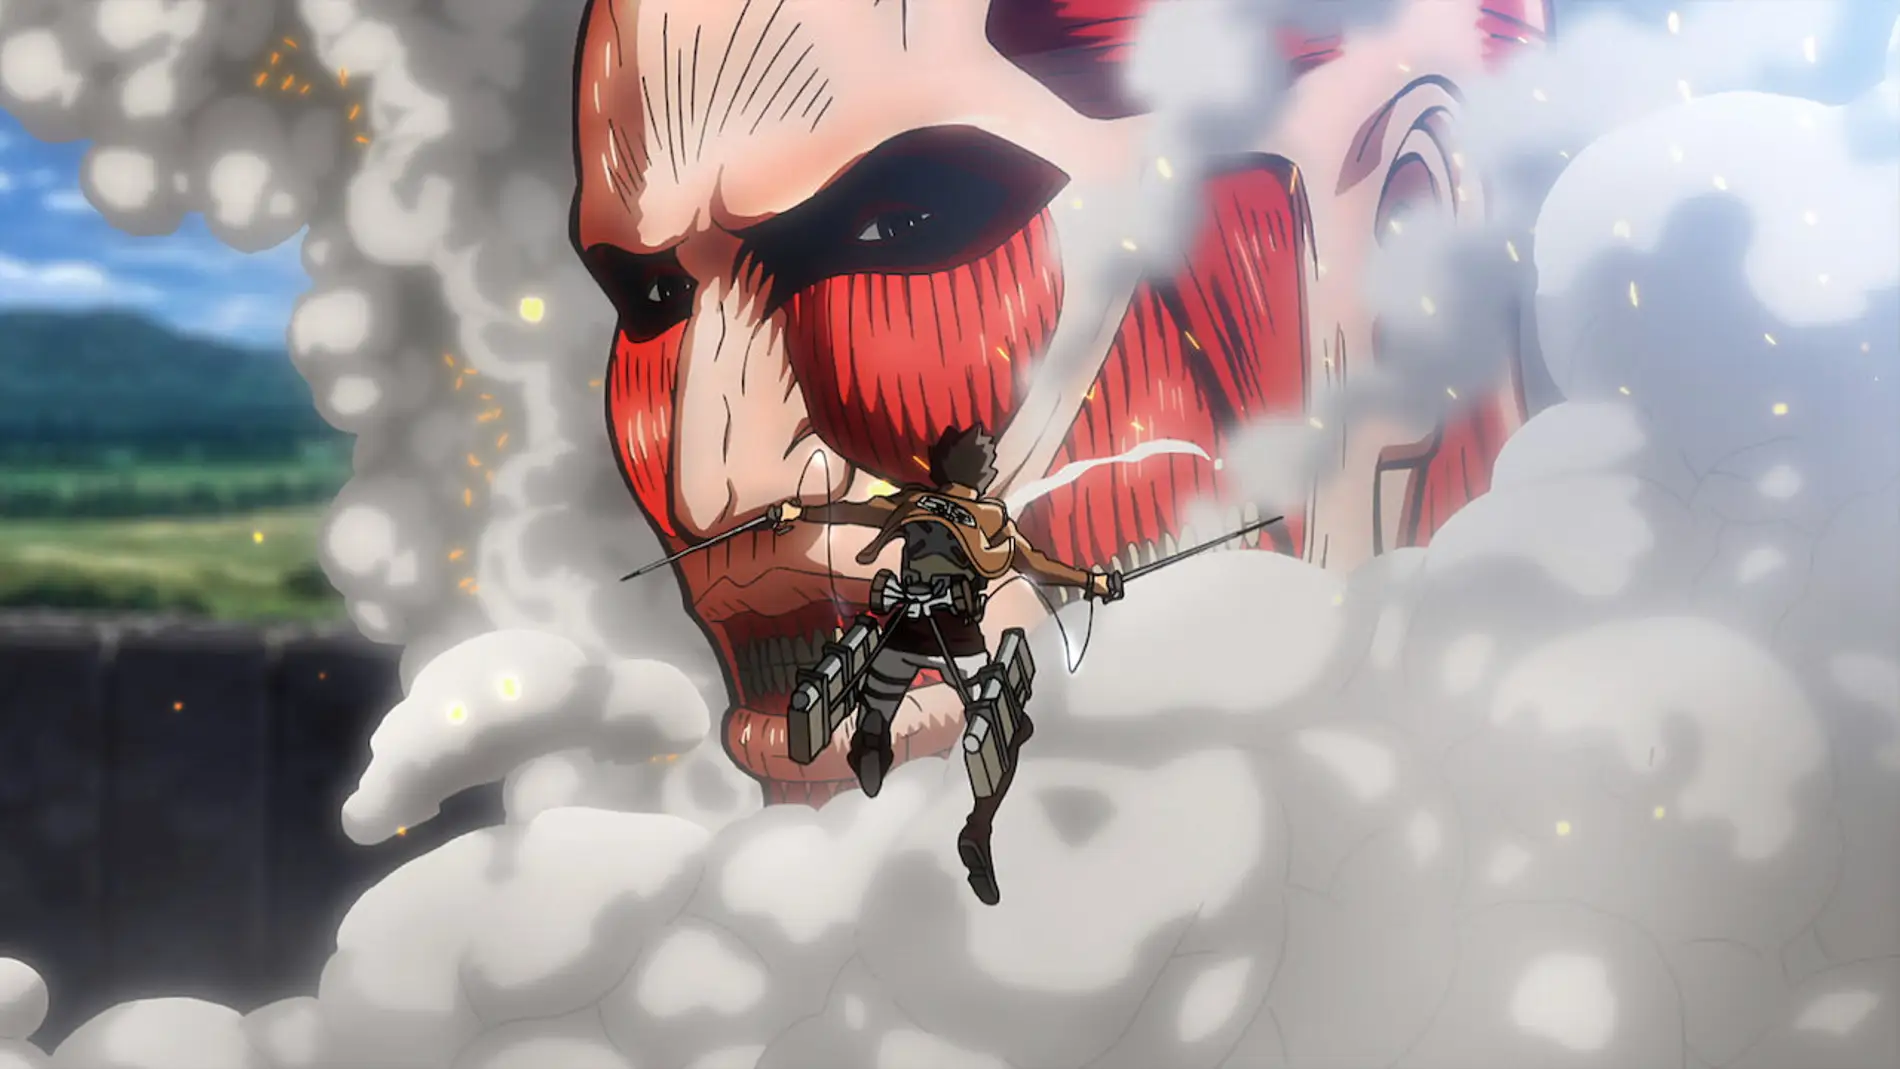 Cuánto miden los titanes más grandes del anime Shingeki no Kyojin?